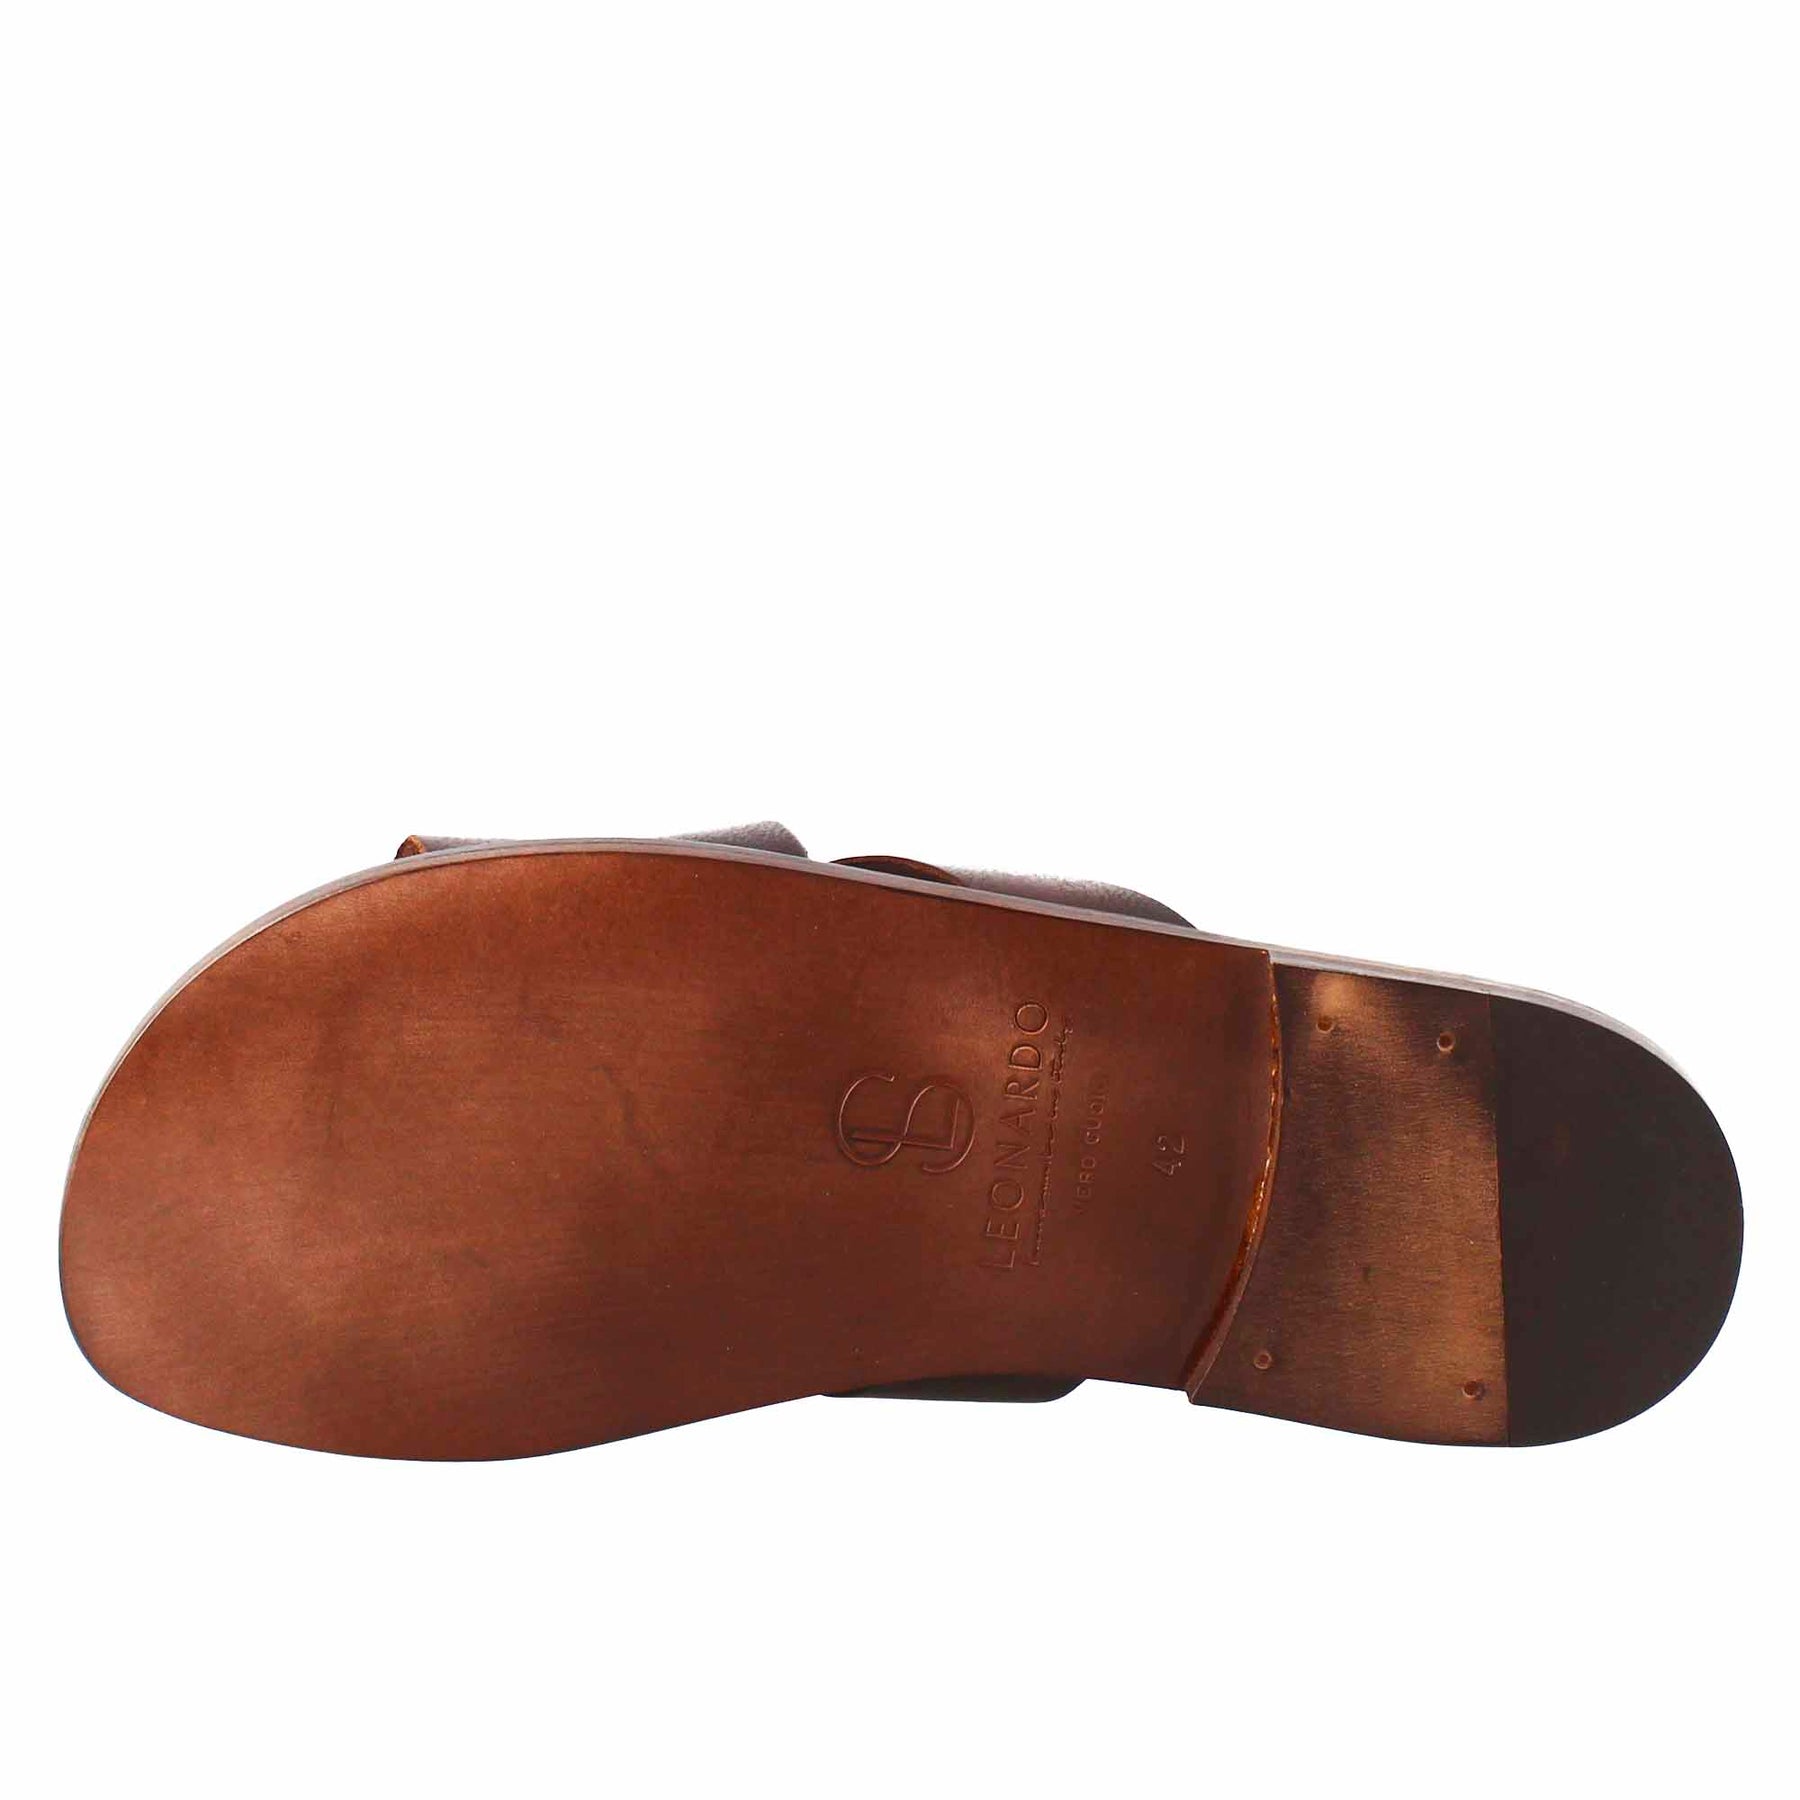 Sandales spartiates en cuir marron pour homme